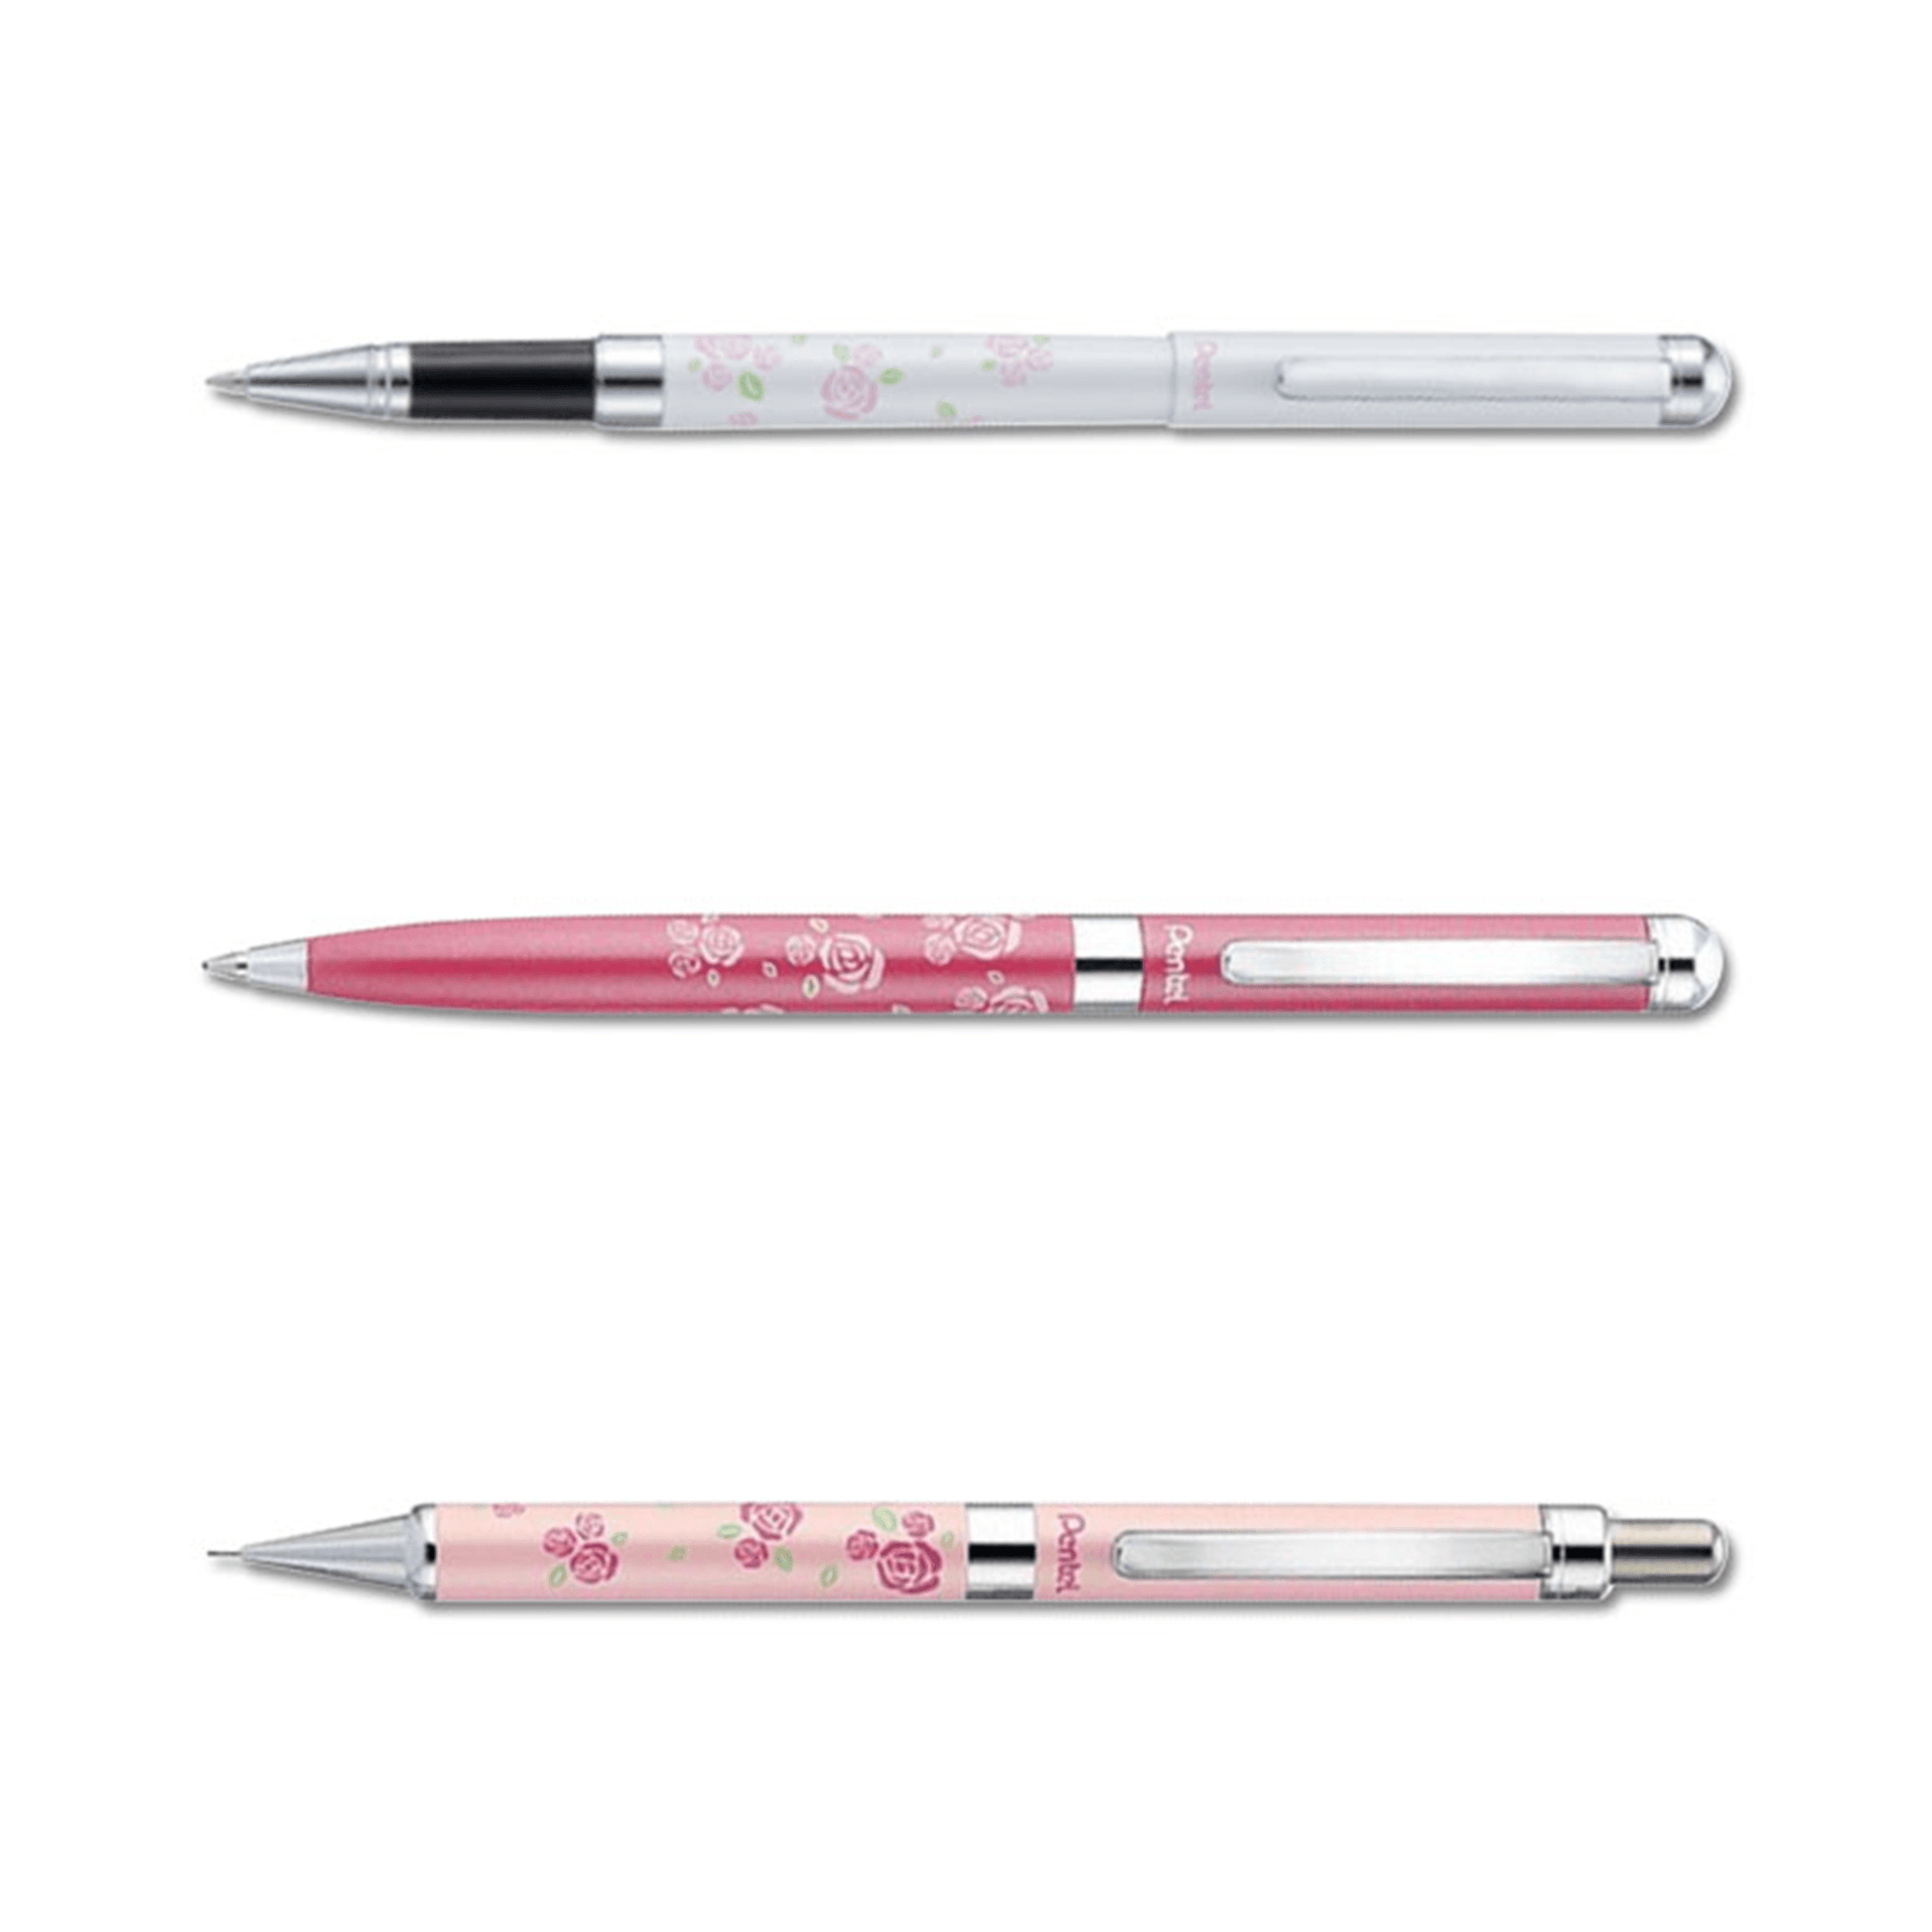 Pentel Sterling Rose Series Metal Pen Premium 0.5mm Mechanical Pencil 0.8mm A820P1T B820P2-AT - CHL-STORE 